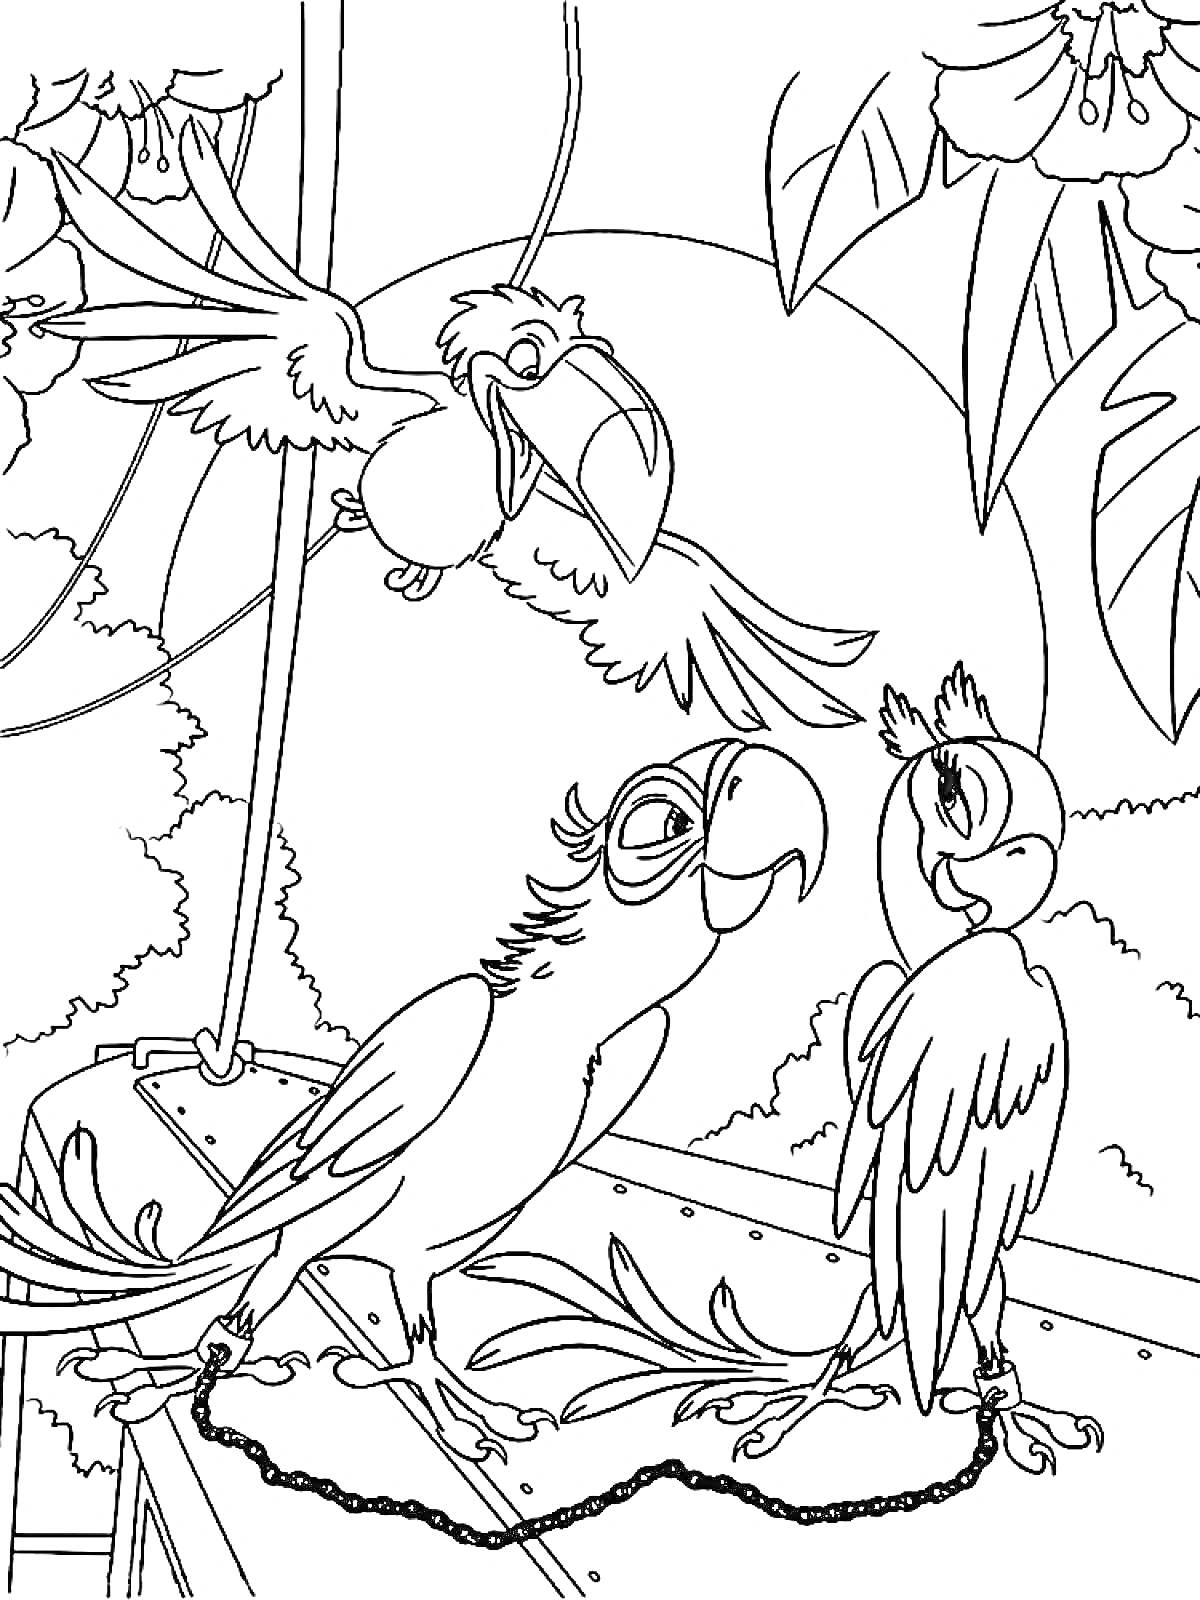 Два попугая на крыше, за которыми наблюдает третий летящий попугай на фоне джунглей и цветущих растений.